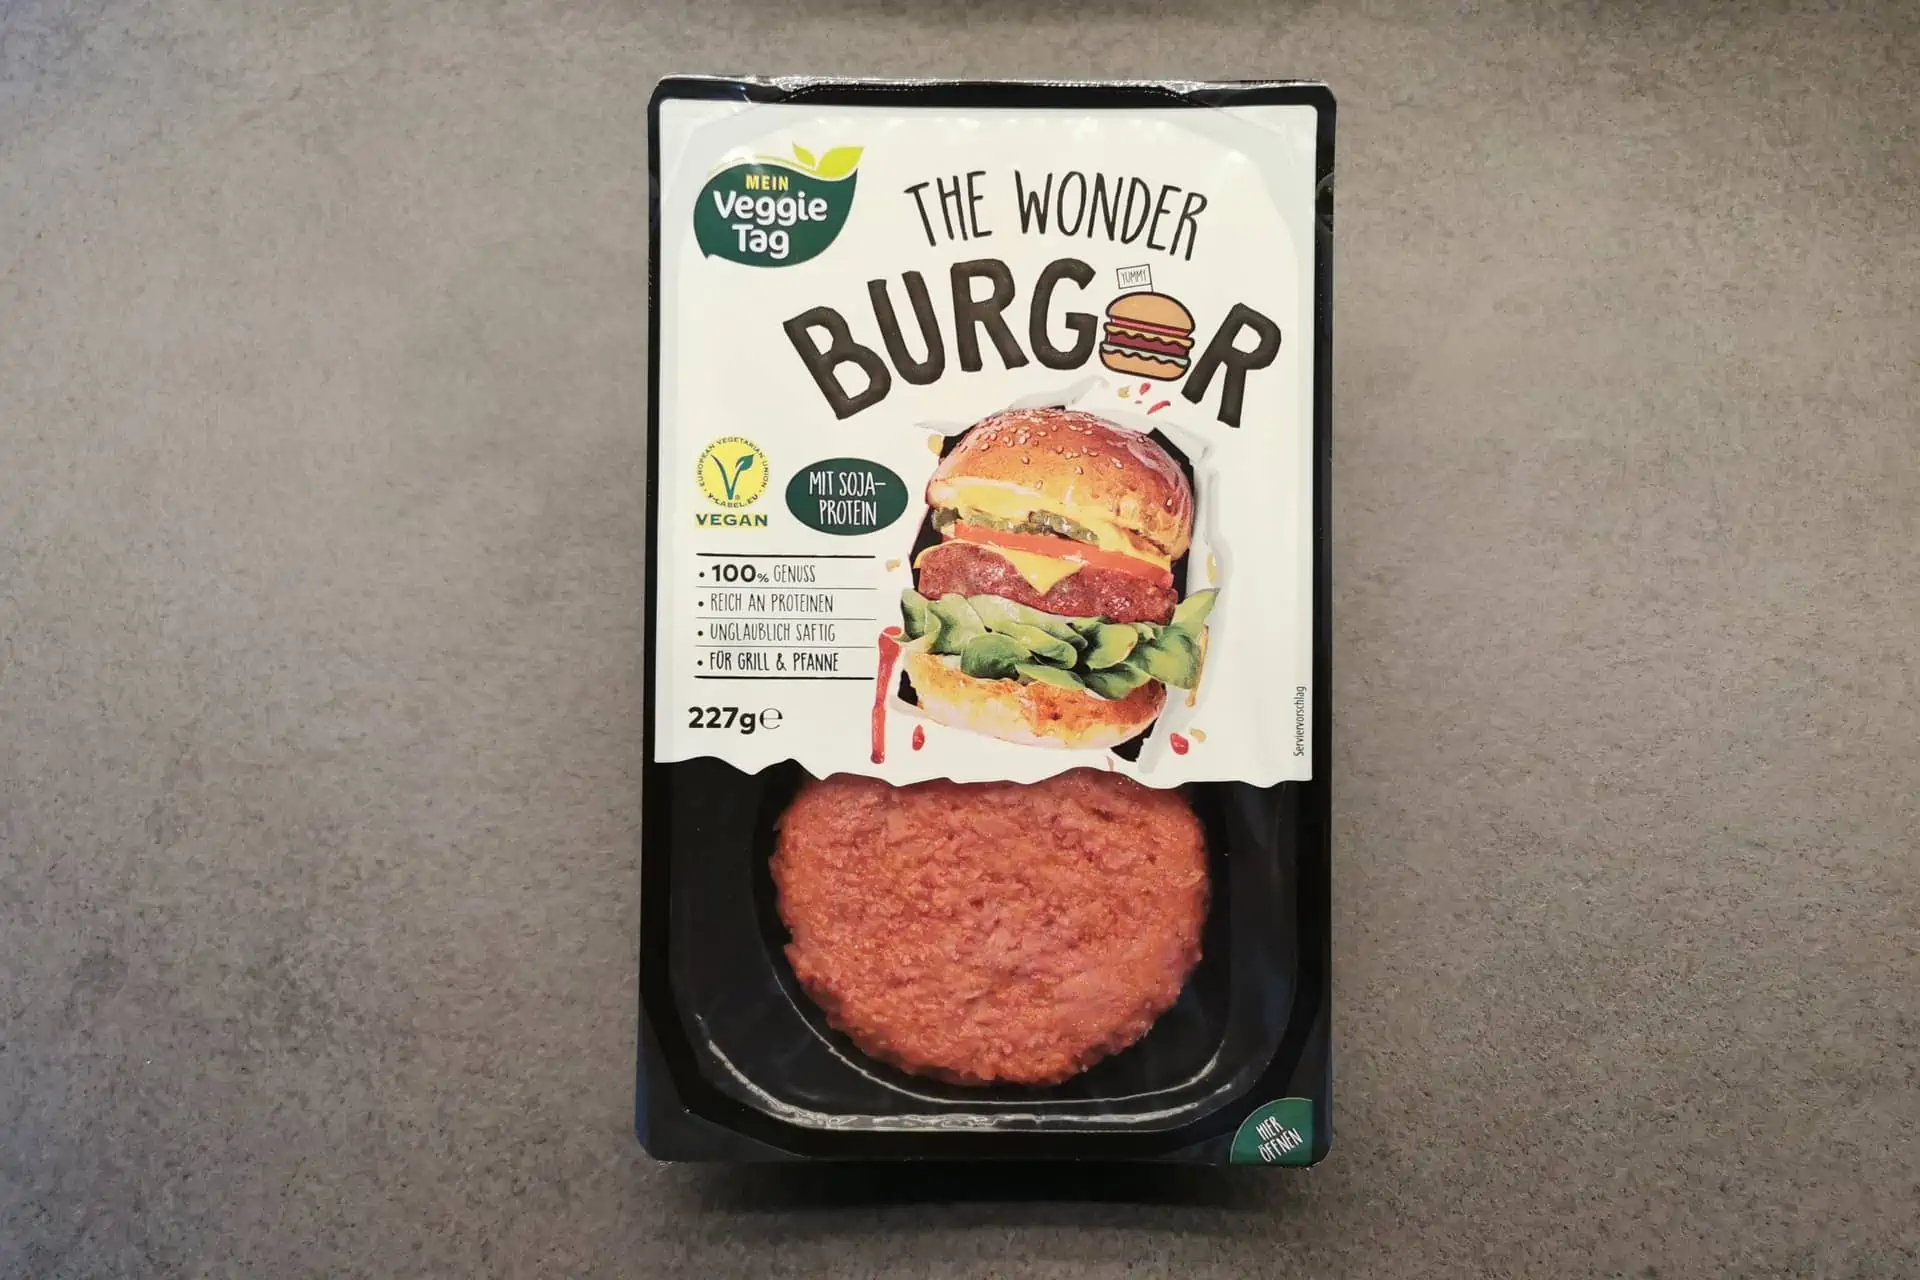 The Wonder Burger mit Soja Protein